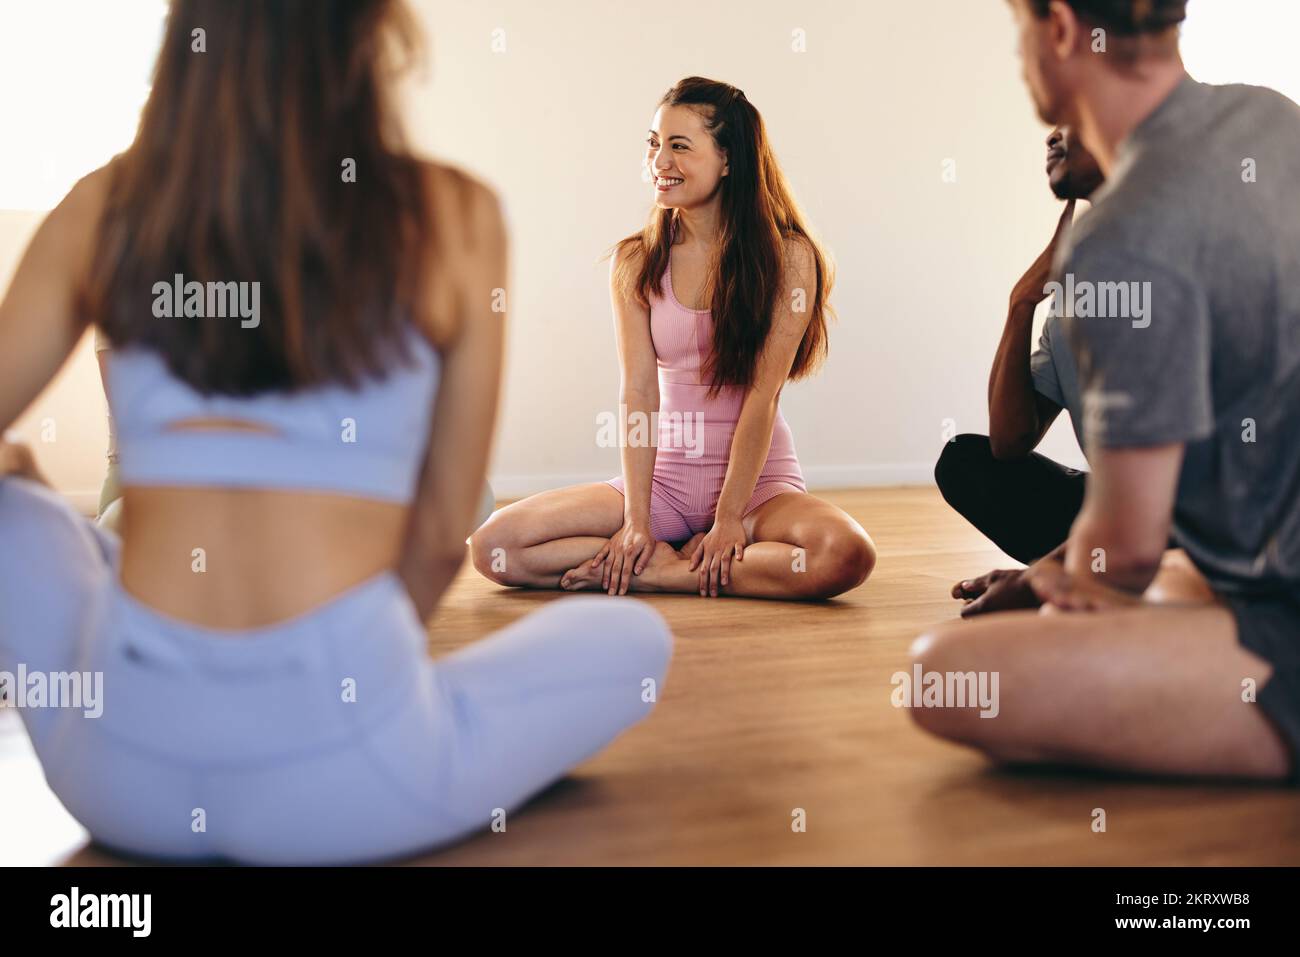 Gruppe glücklicher Menschen, die miteinander kommunizieren, während sie im Kreis sitzen. Fitness-Leute teilen sich in einer Yoga-Unterstützungsgruppe Bewältigungstipps. Junge Menschen Stockfoto